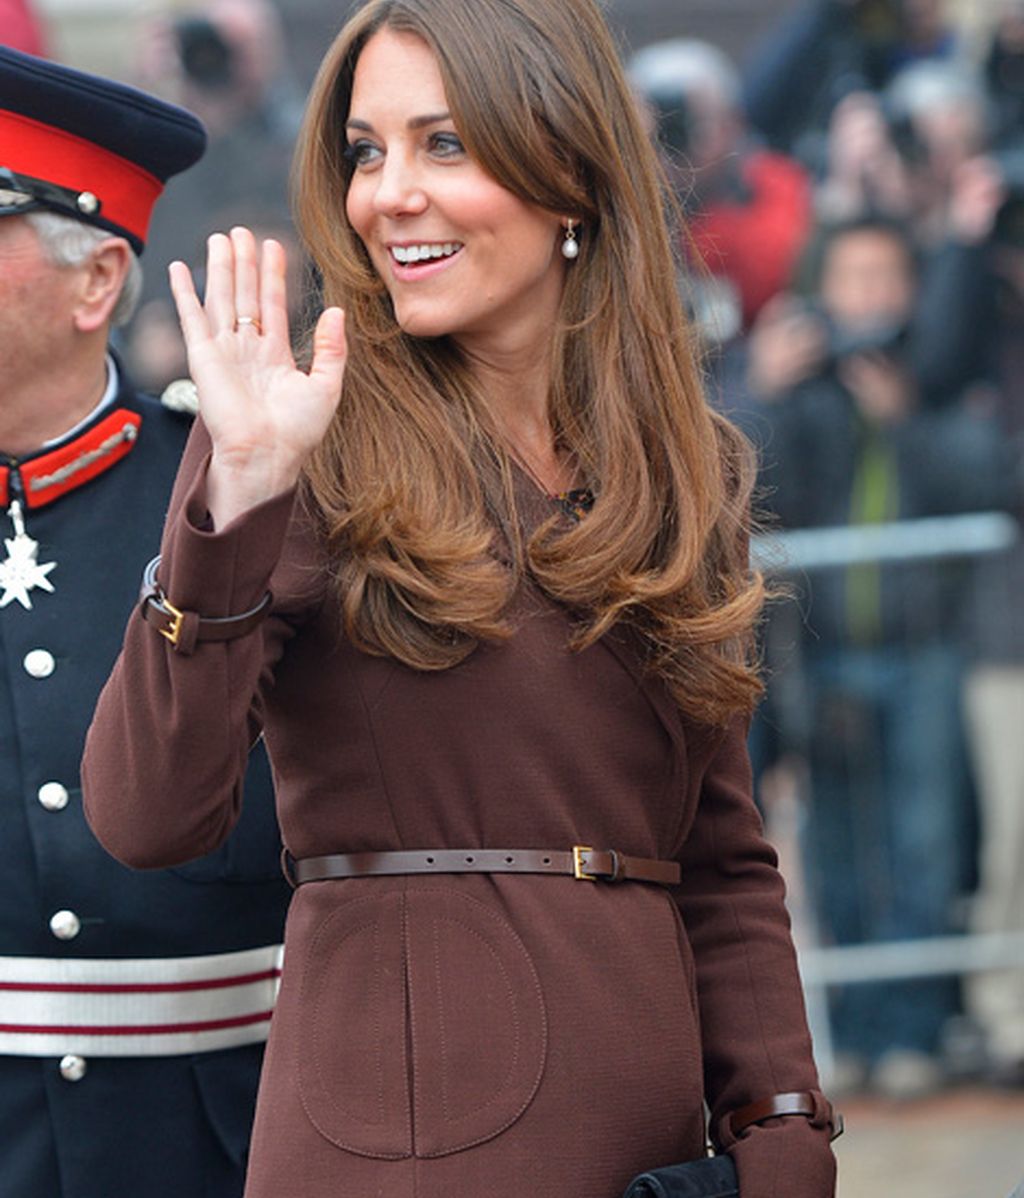 El embarazo de Kate Middleton mes a mes